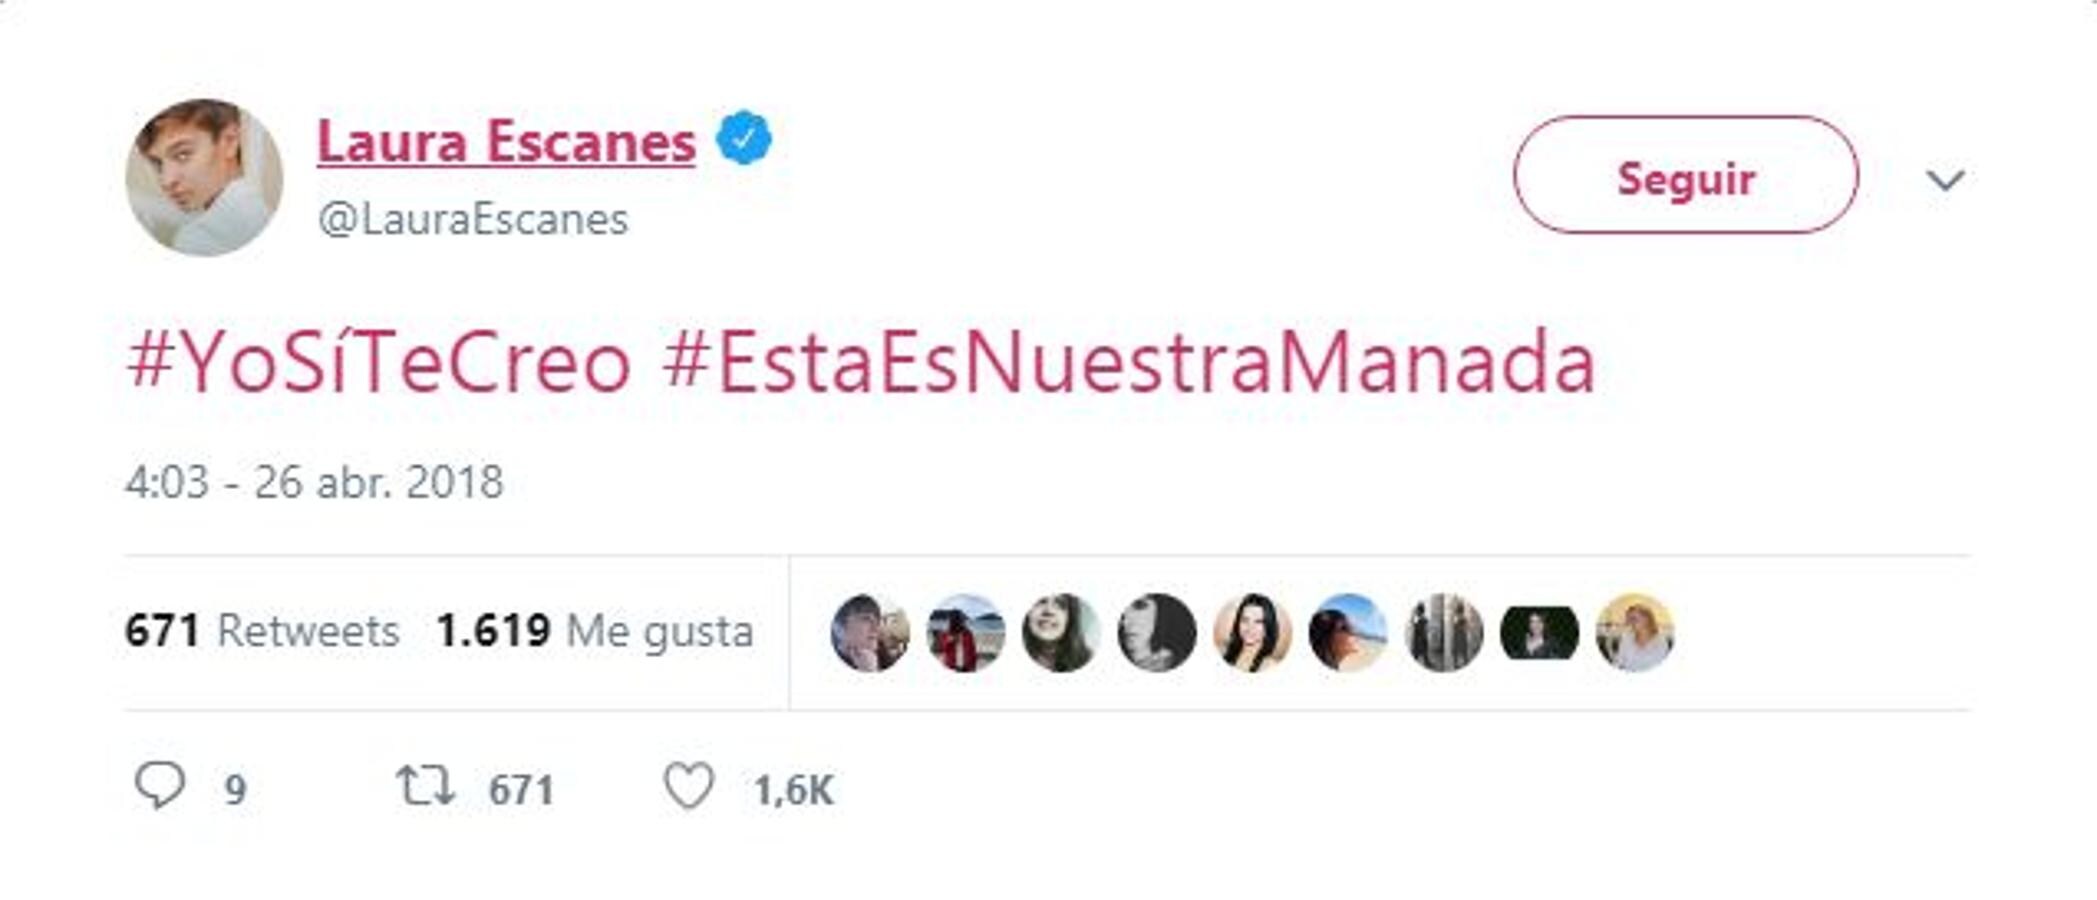 Laura Escanes. La mujer de Risto Mejide publica un tuit con dos hashtags muy breves que muestran su apoyo a la víctima